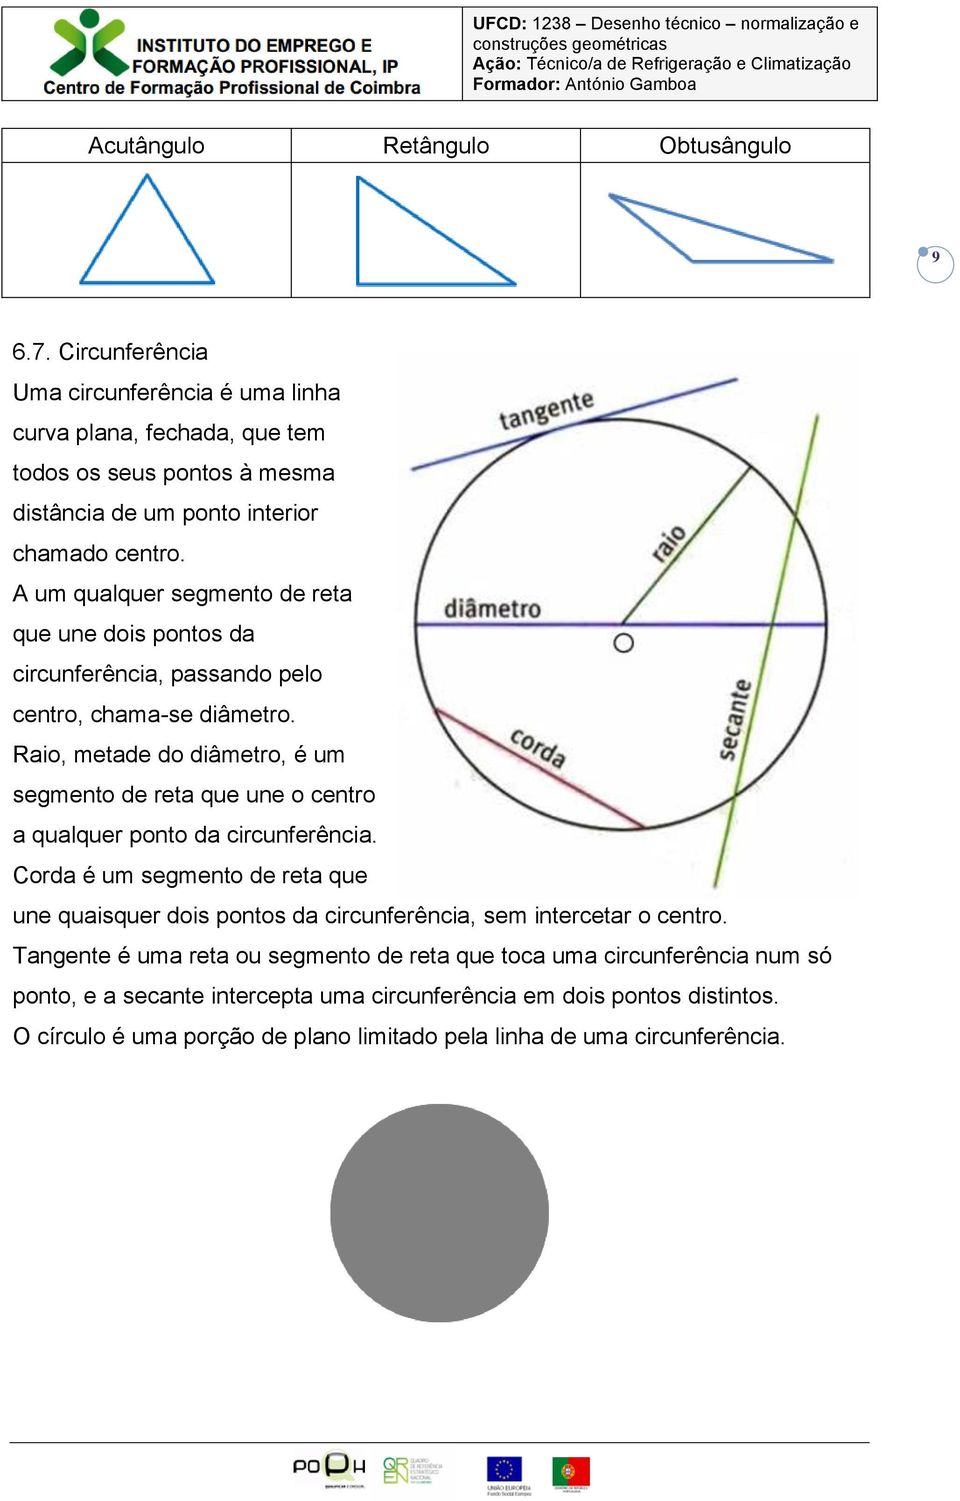 A um qualquer segmento de reta que une dois pontos da circunferência, passando pelo centro, chama-se diâmetro.